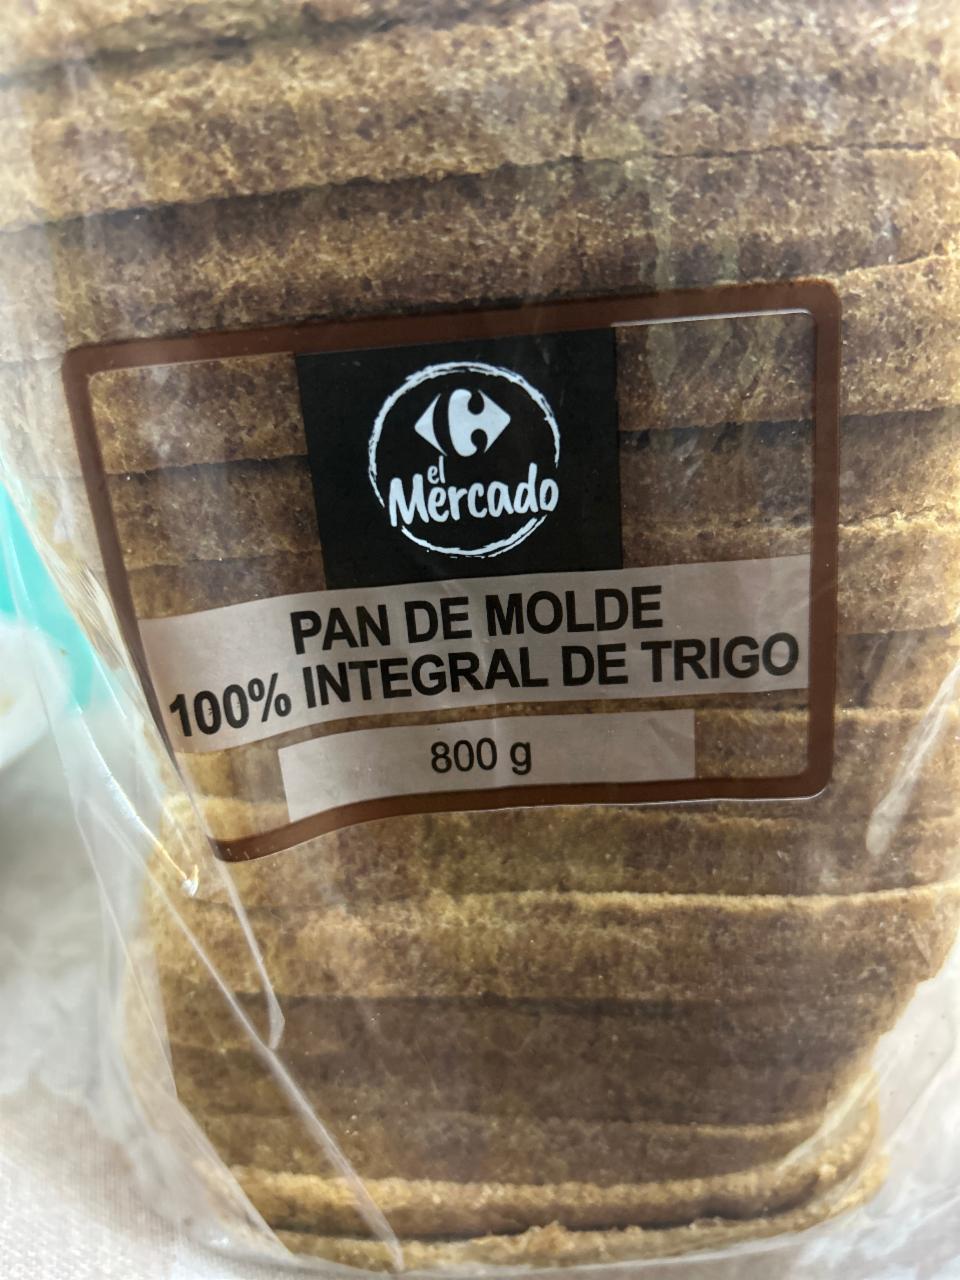 Fotografie - Pan de molde 100% integral de trigo El Mercado